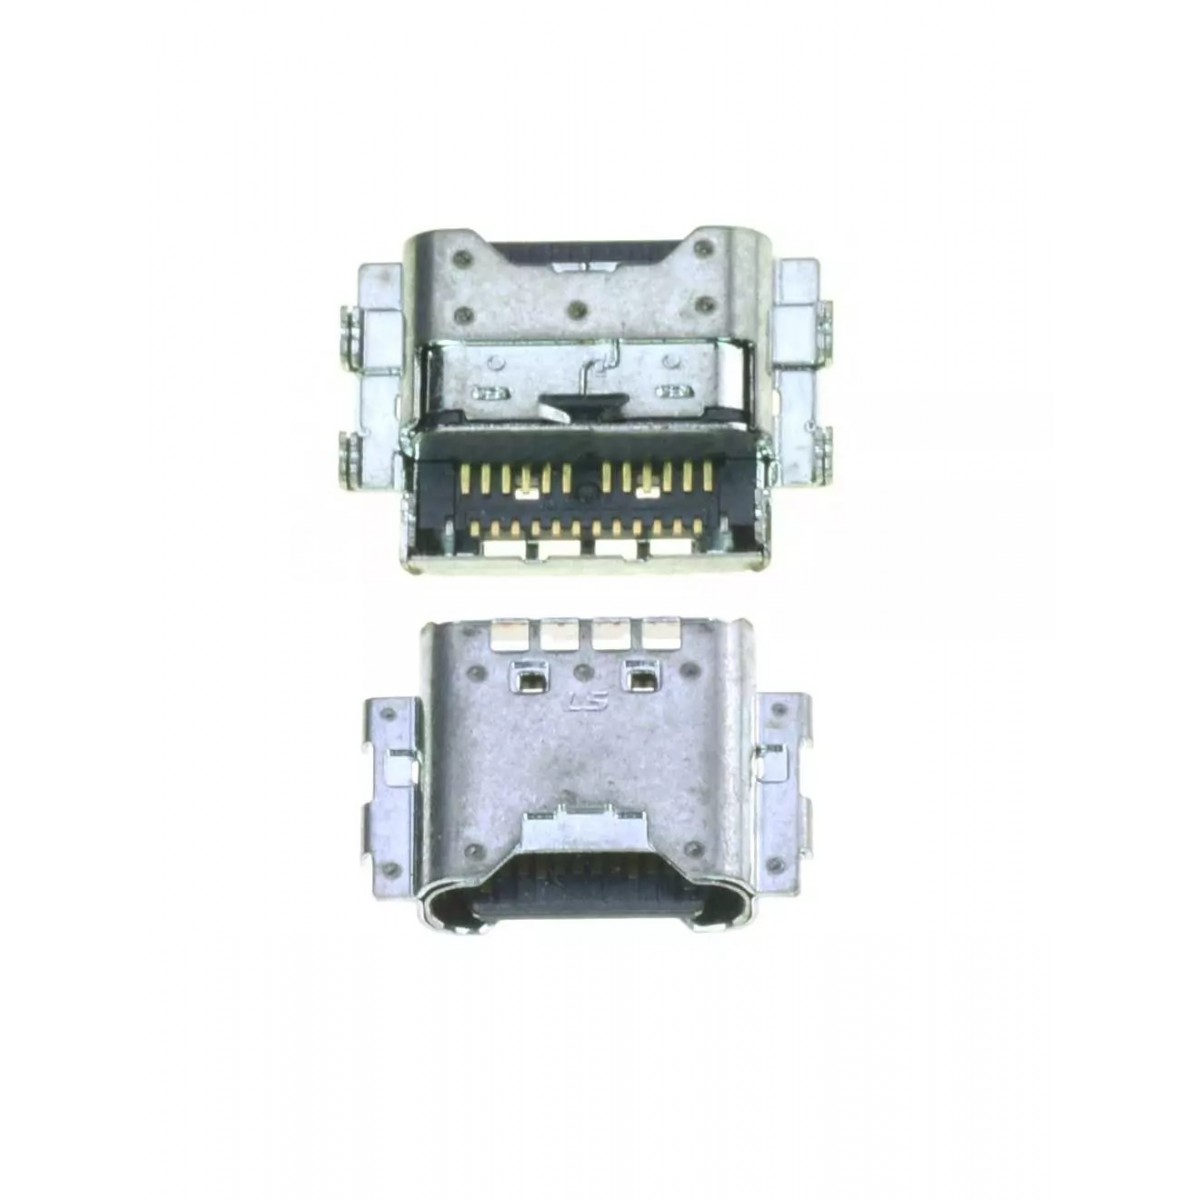 Connecteur de charge Samsung Galaxy Tab S3 9.7 (SM-T820/SM-T825)/Tab A 2018 10.5 (SM-T590/SM-T595) / Tab S6 (SM-T865/SM-T860) / 